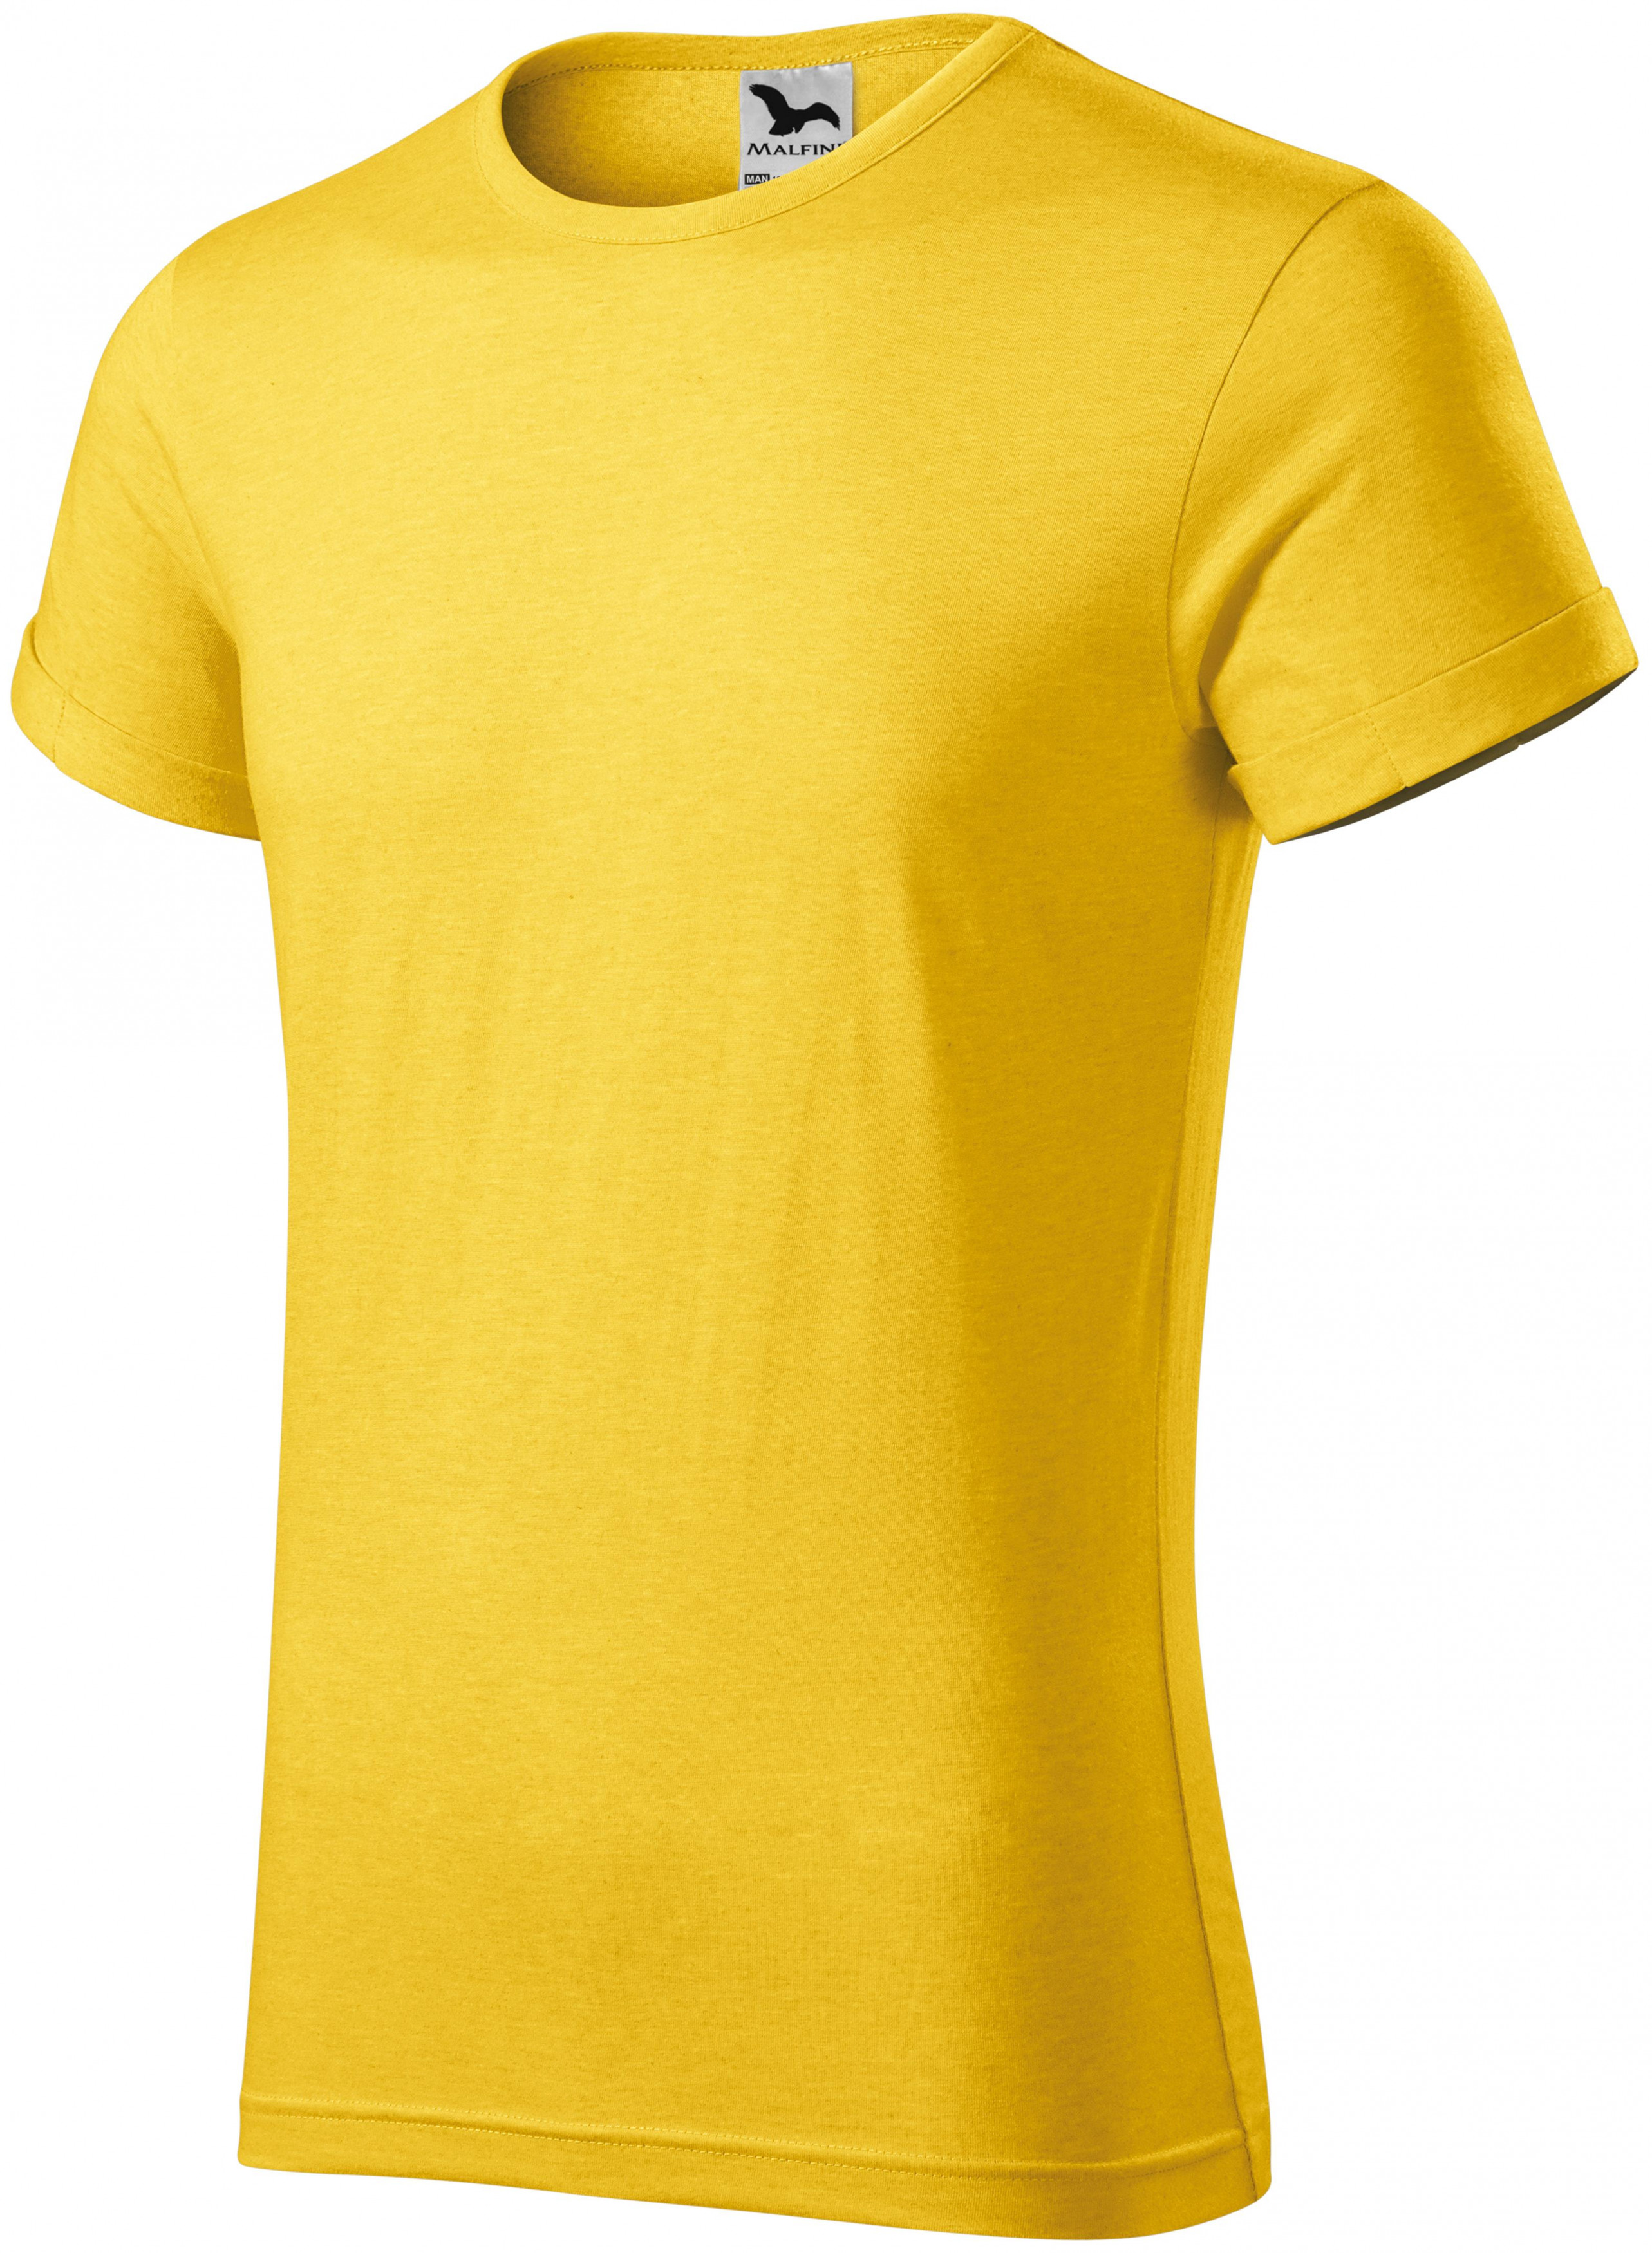 Pánske tričko s vyhrnutými rukávmi, žltý melír, M